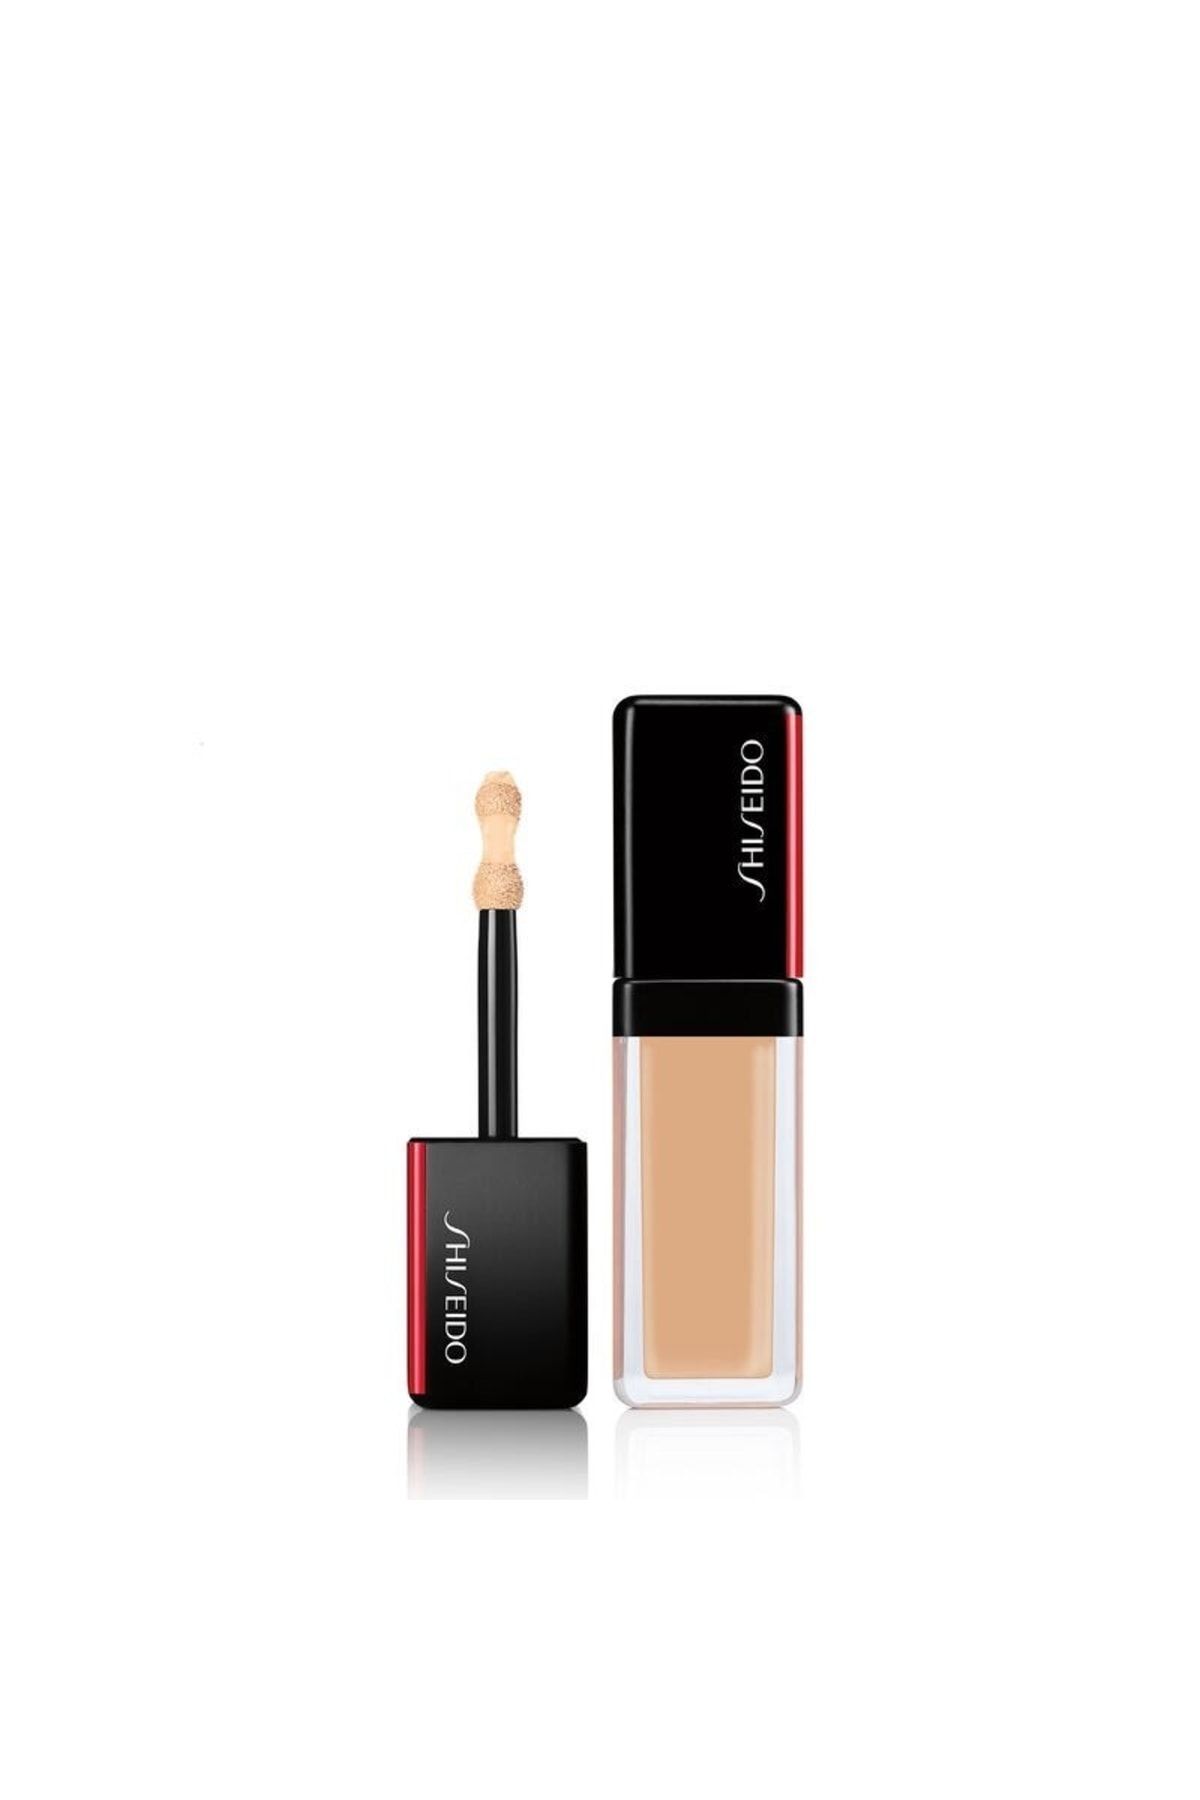 Shiseido Synchro Skın Self-refreshıng Concealer Yüksek Kapatıcılığa Sahip Dayanıklı Likit Kapatıcı 203 Light